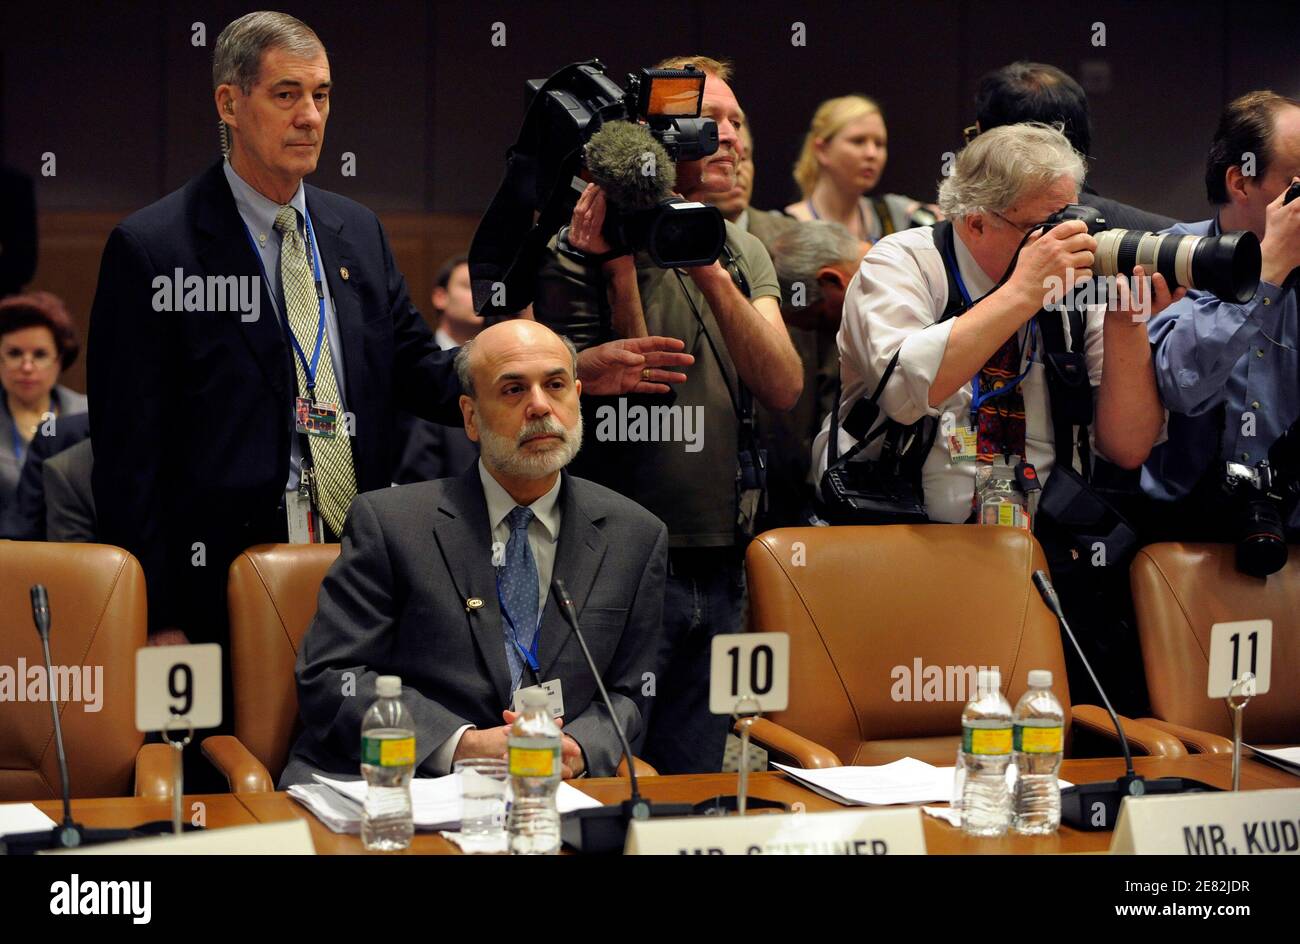 US-Notenbankchef Ben Bernanke wartet allein für den Start des internationalen Währungs- und Finanzausschusses (IMFC) Treffens während der IWF und Weltbank Frühjahrstagung in Washington, 25. April 2009.   REUTERS/Mike Theiler (Vereinigte Staaten-Politik-Geschäft) Stockfoto